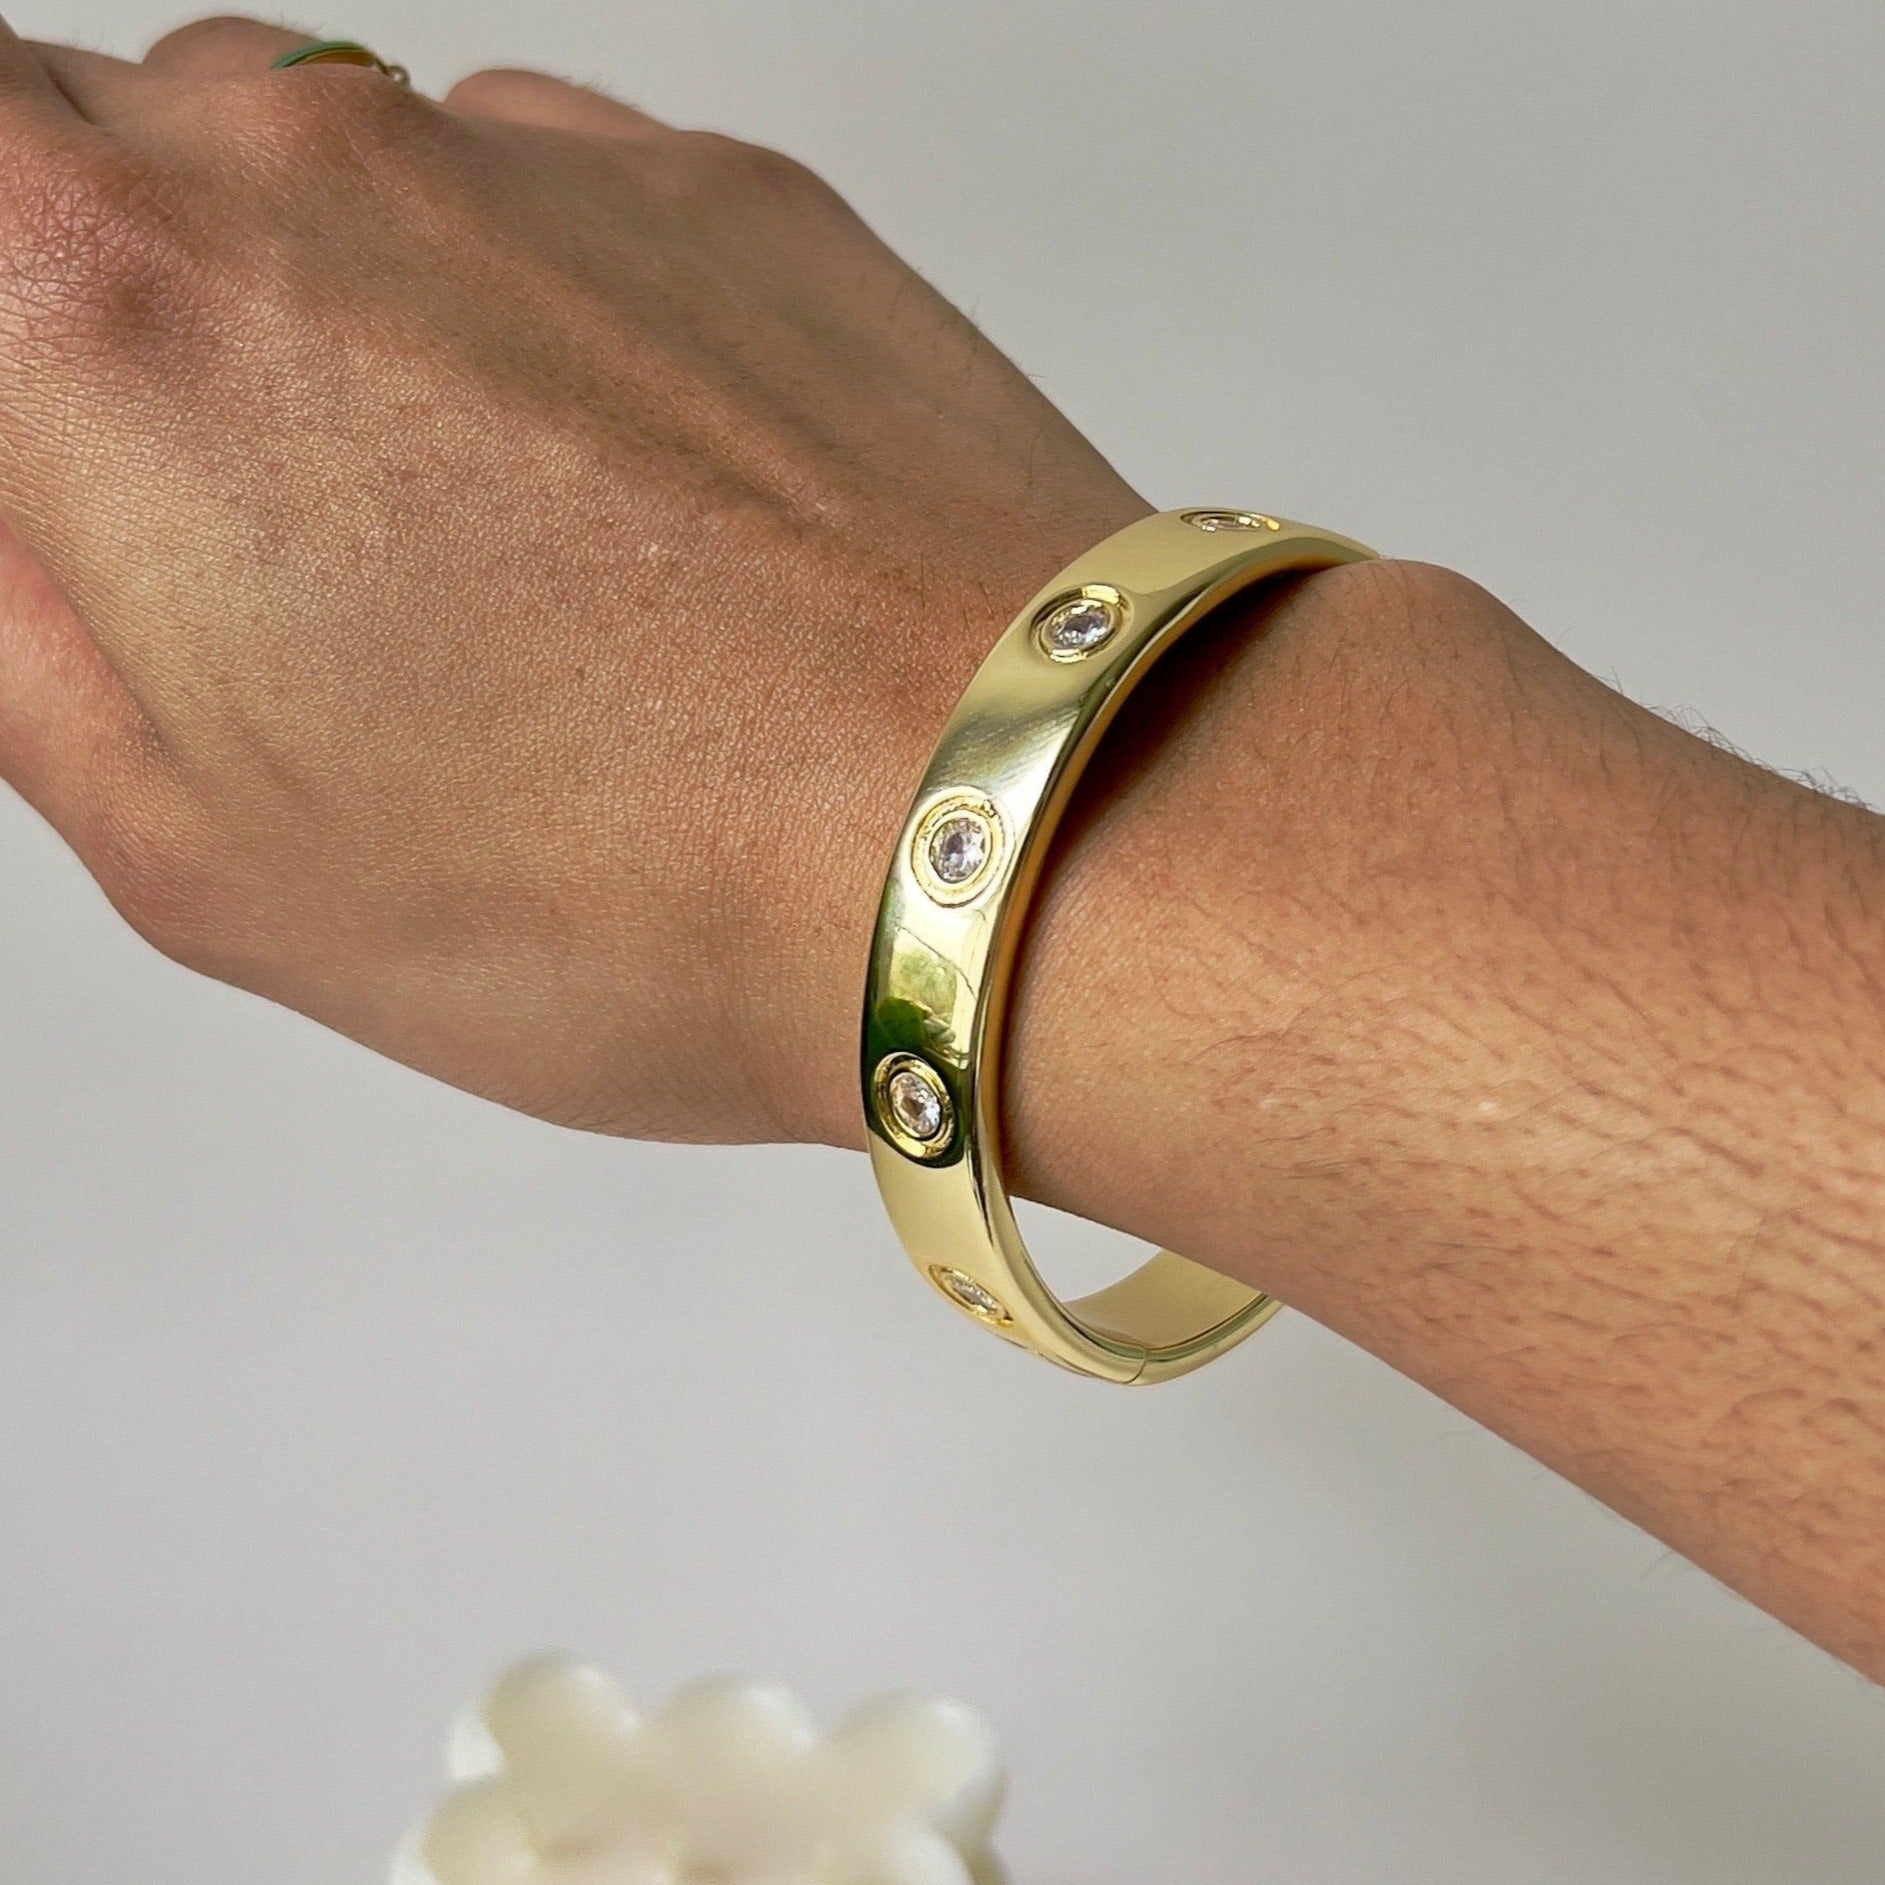 golden locked bracelet with zirconia details